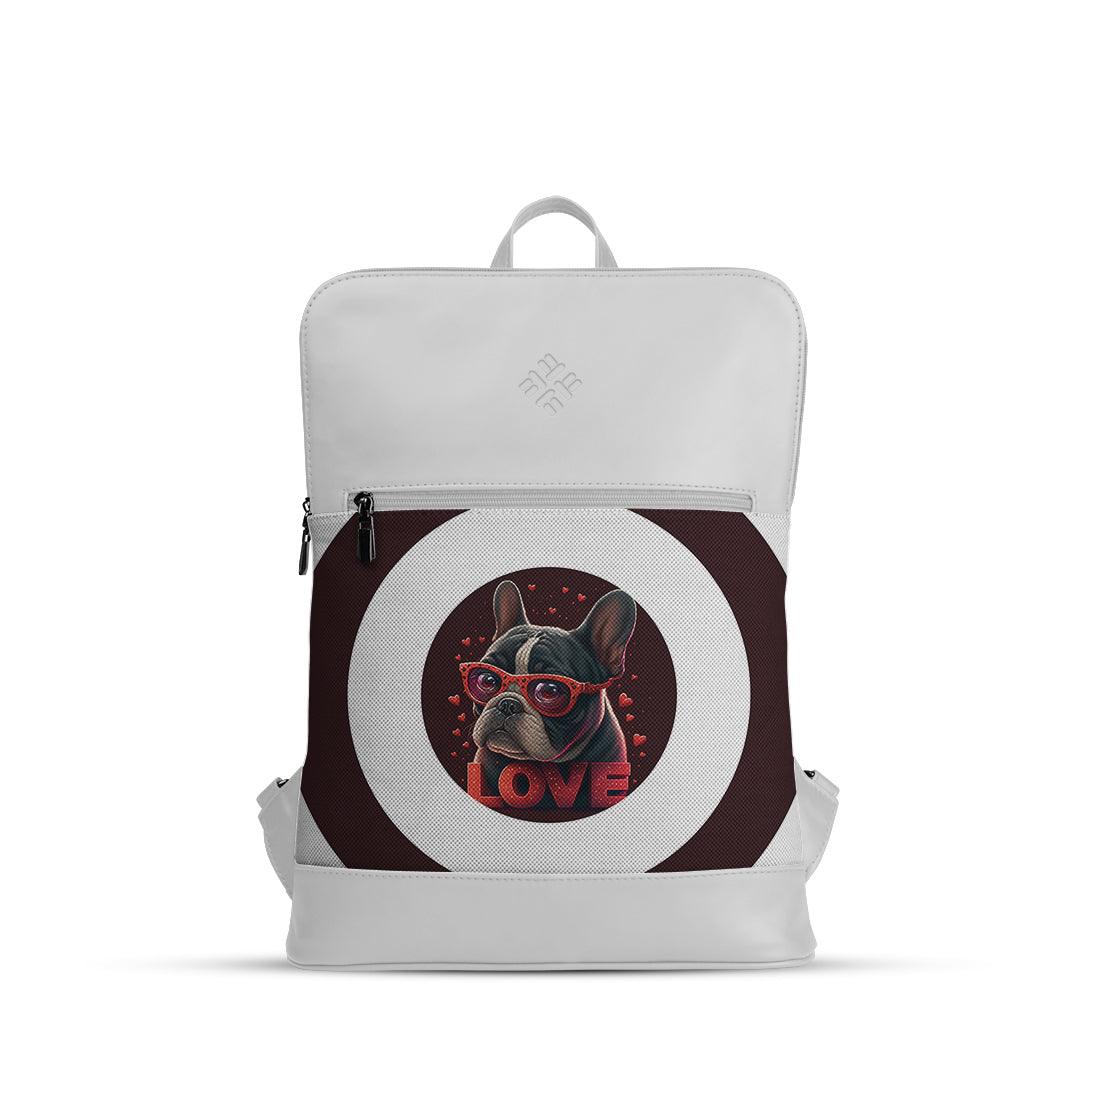 White Orbit Laptop Backpack Dog Love - CANVAEGYPT